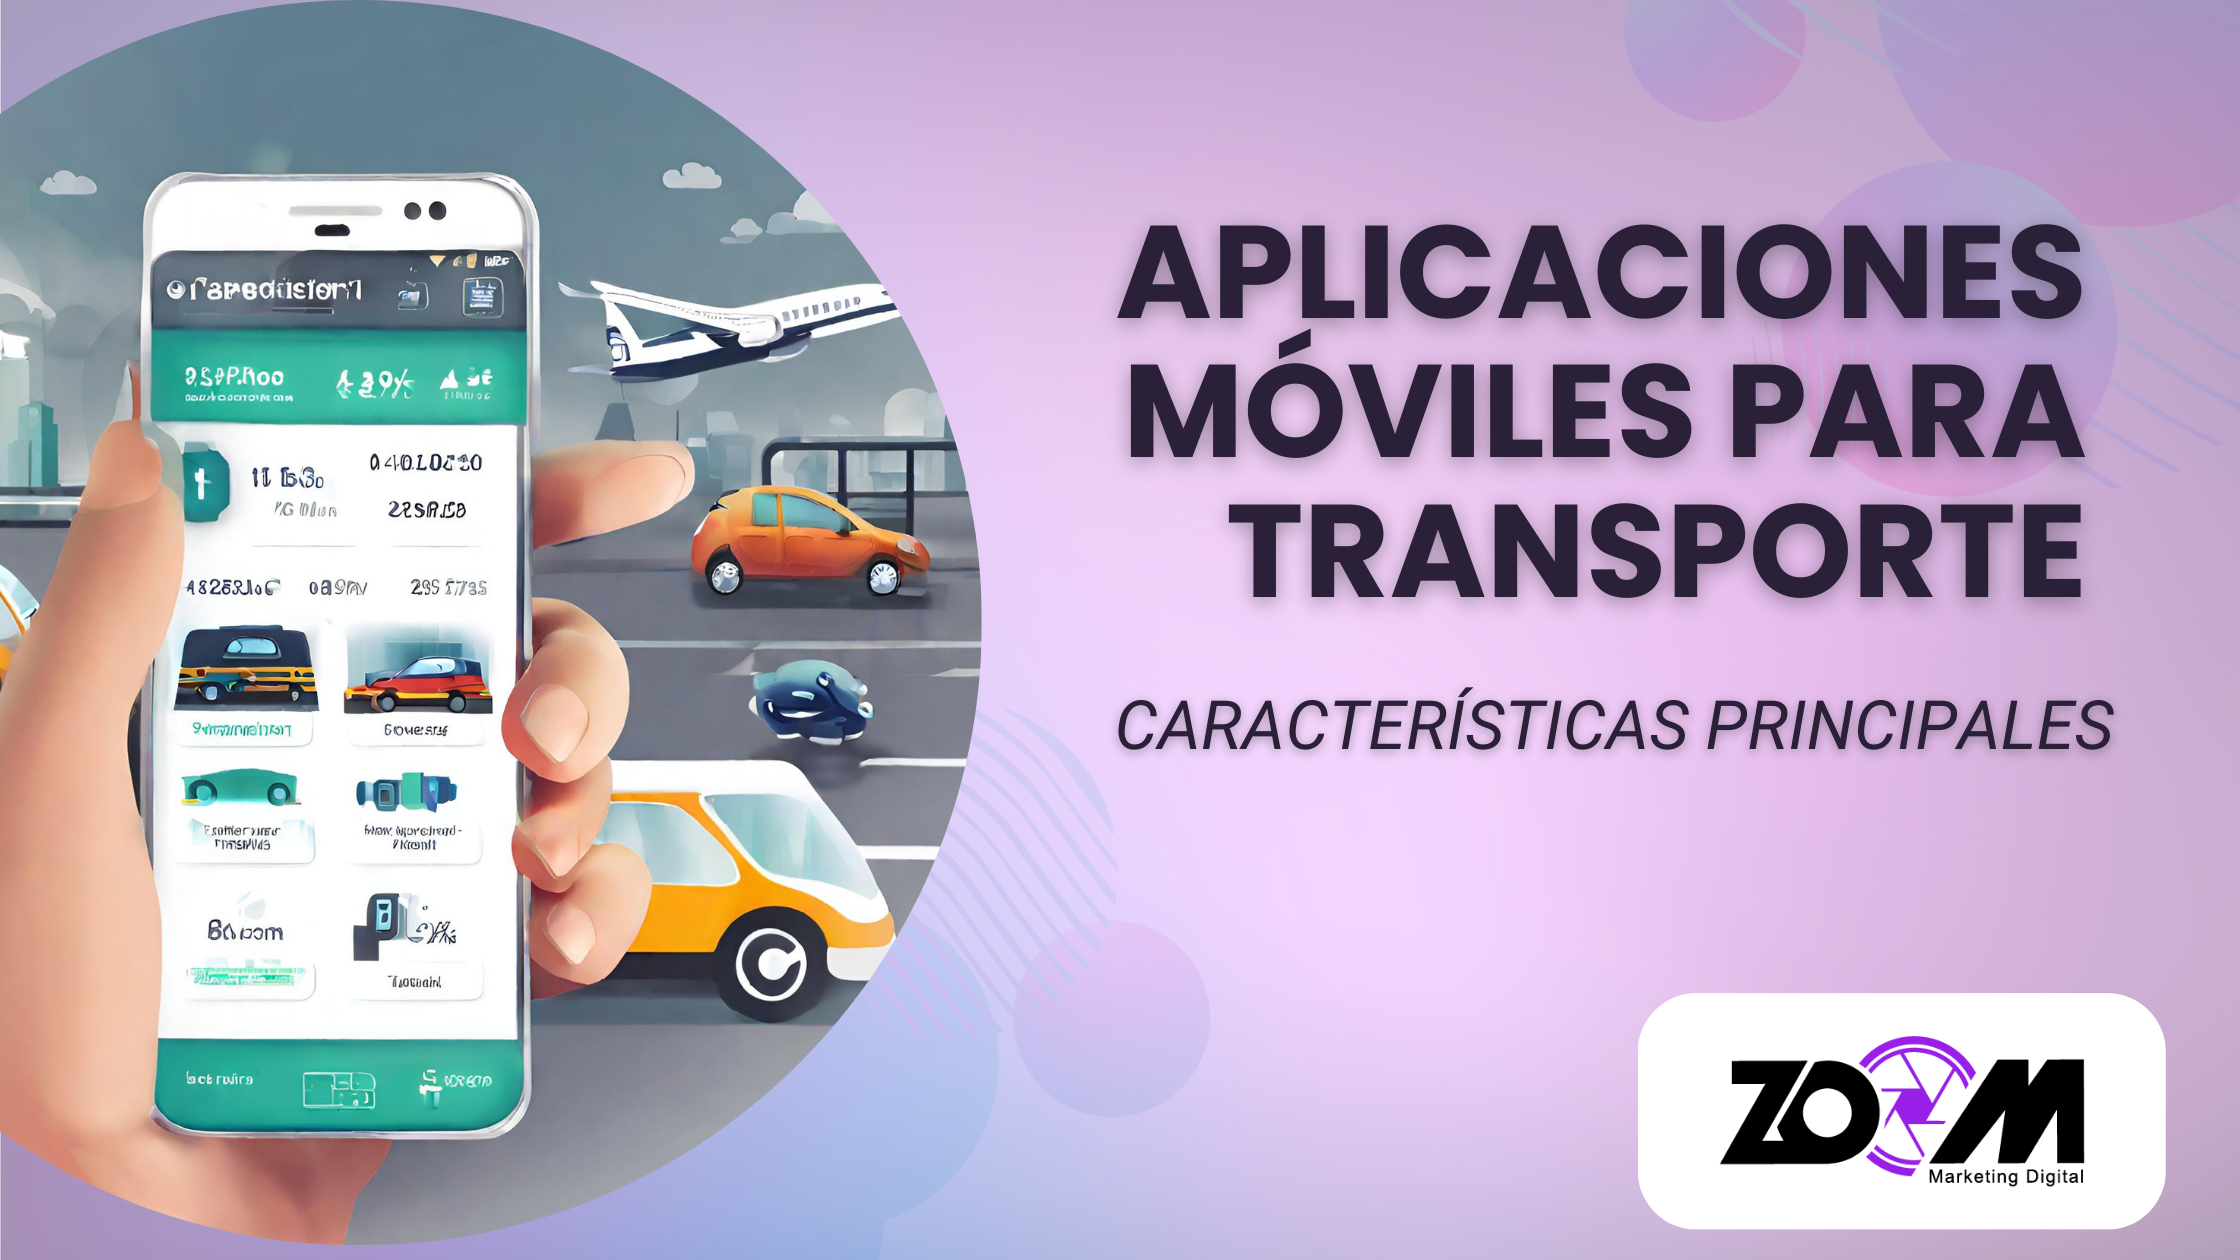 Aplicaciones móviles de transporte: tipos y características